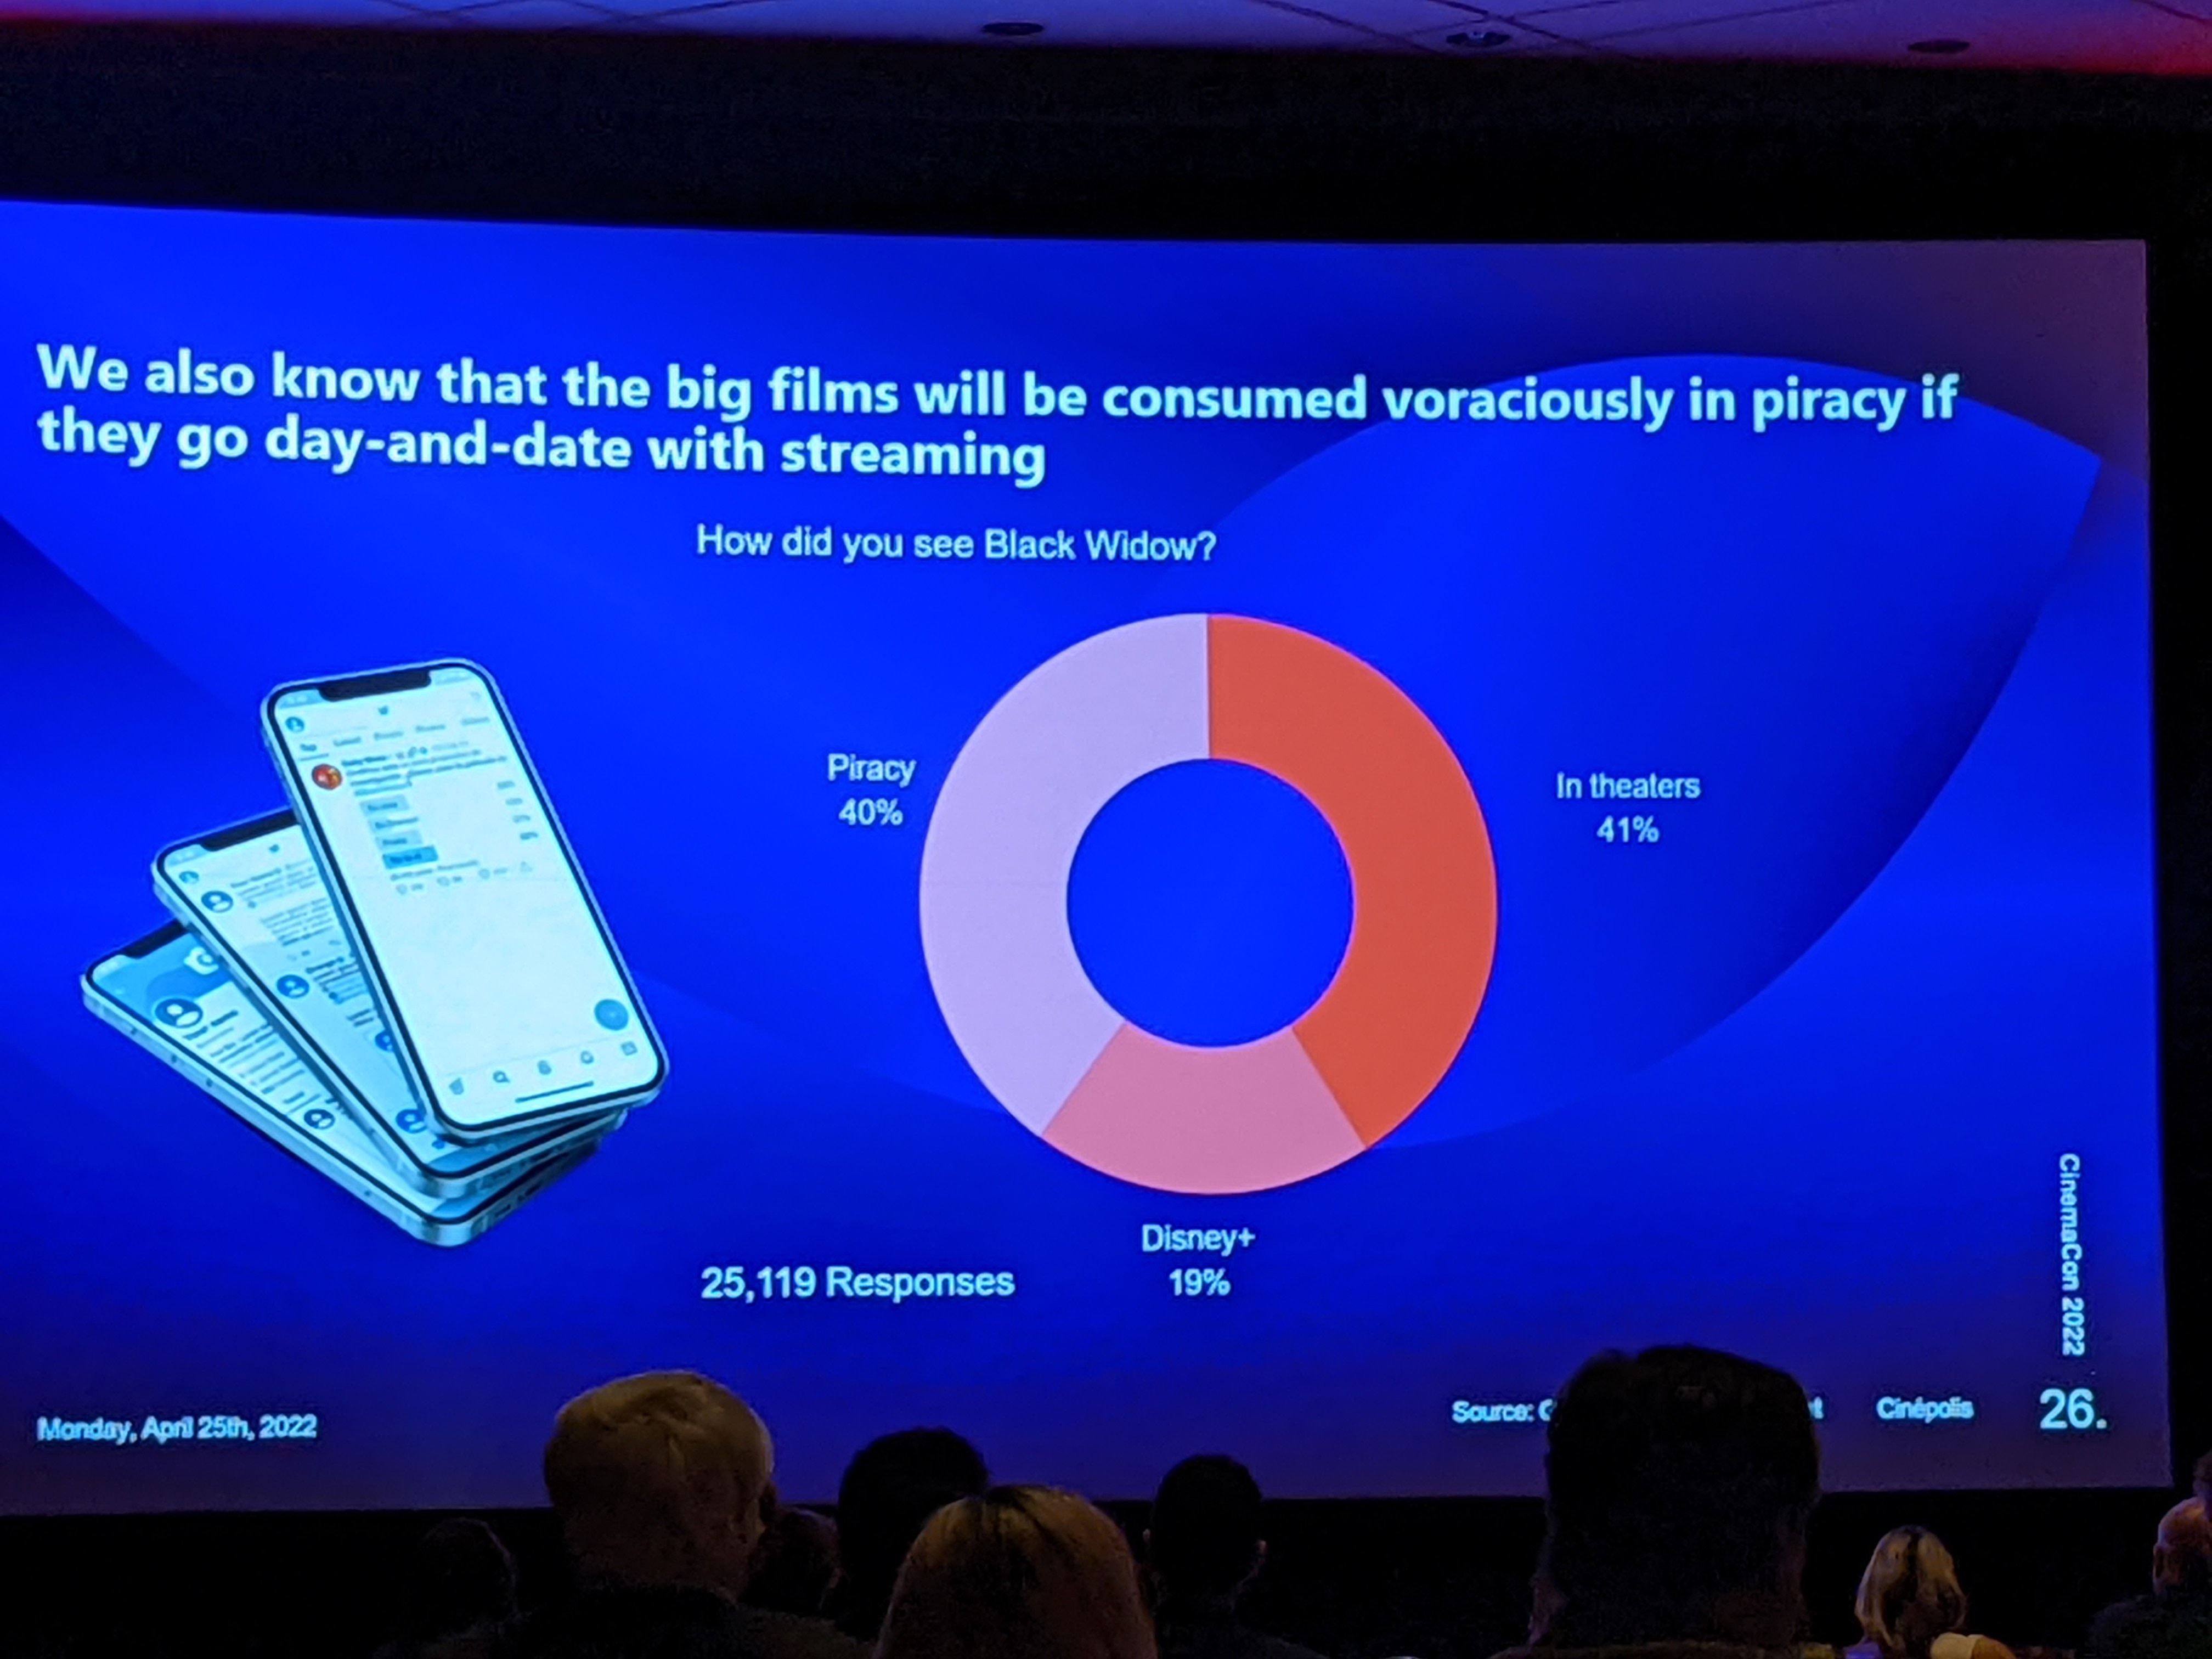 Black Widow viewership numbers breakdown via Cin polis CEO presentation at CinemaCon